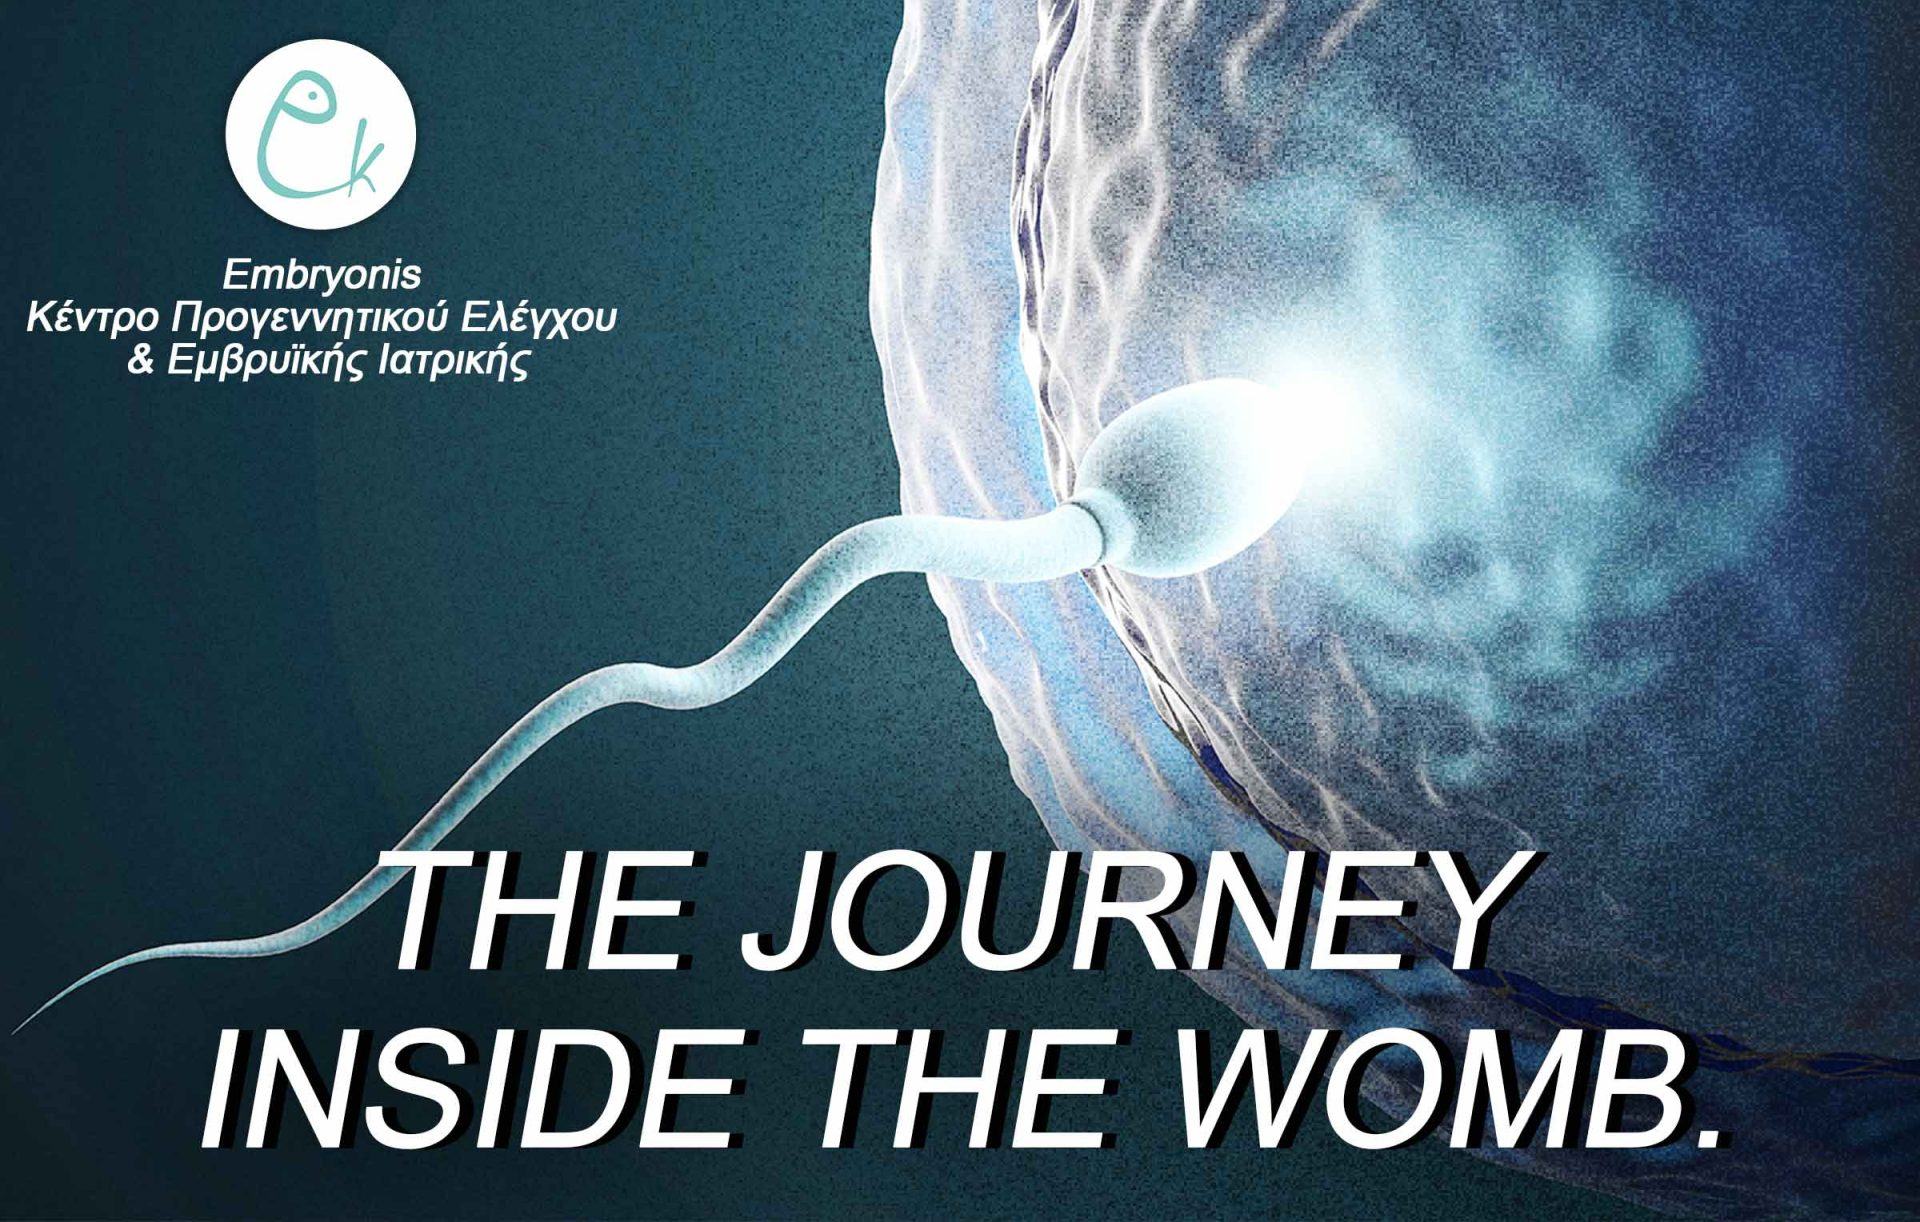 Embryonis – Kέντρο Προγεννητικού Ελέγχου και Εμβρυϊκής Ιατρικής